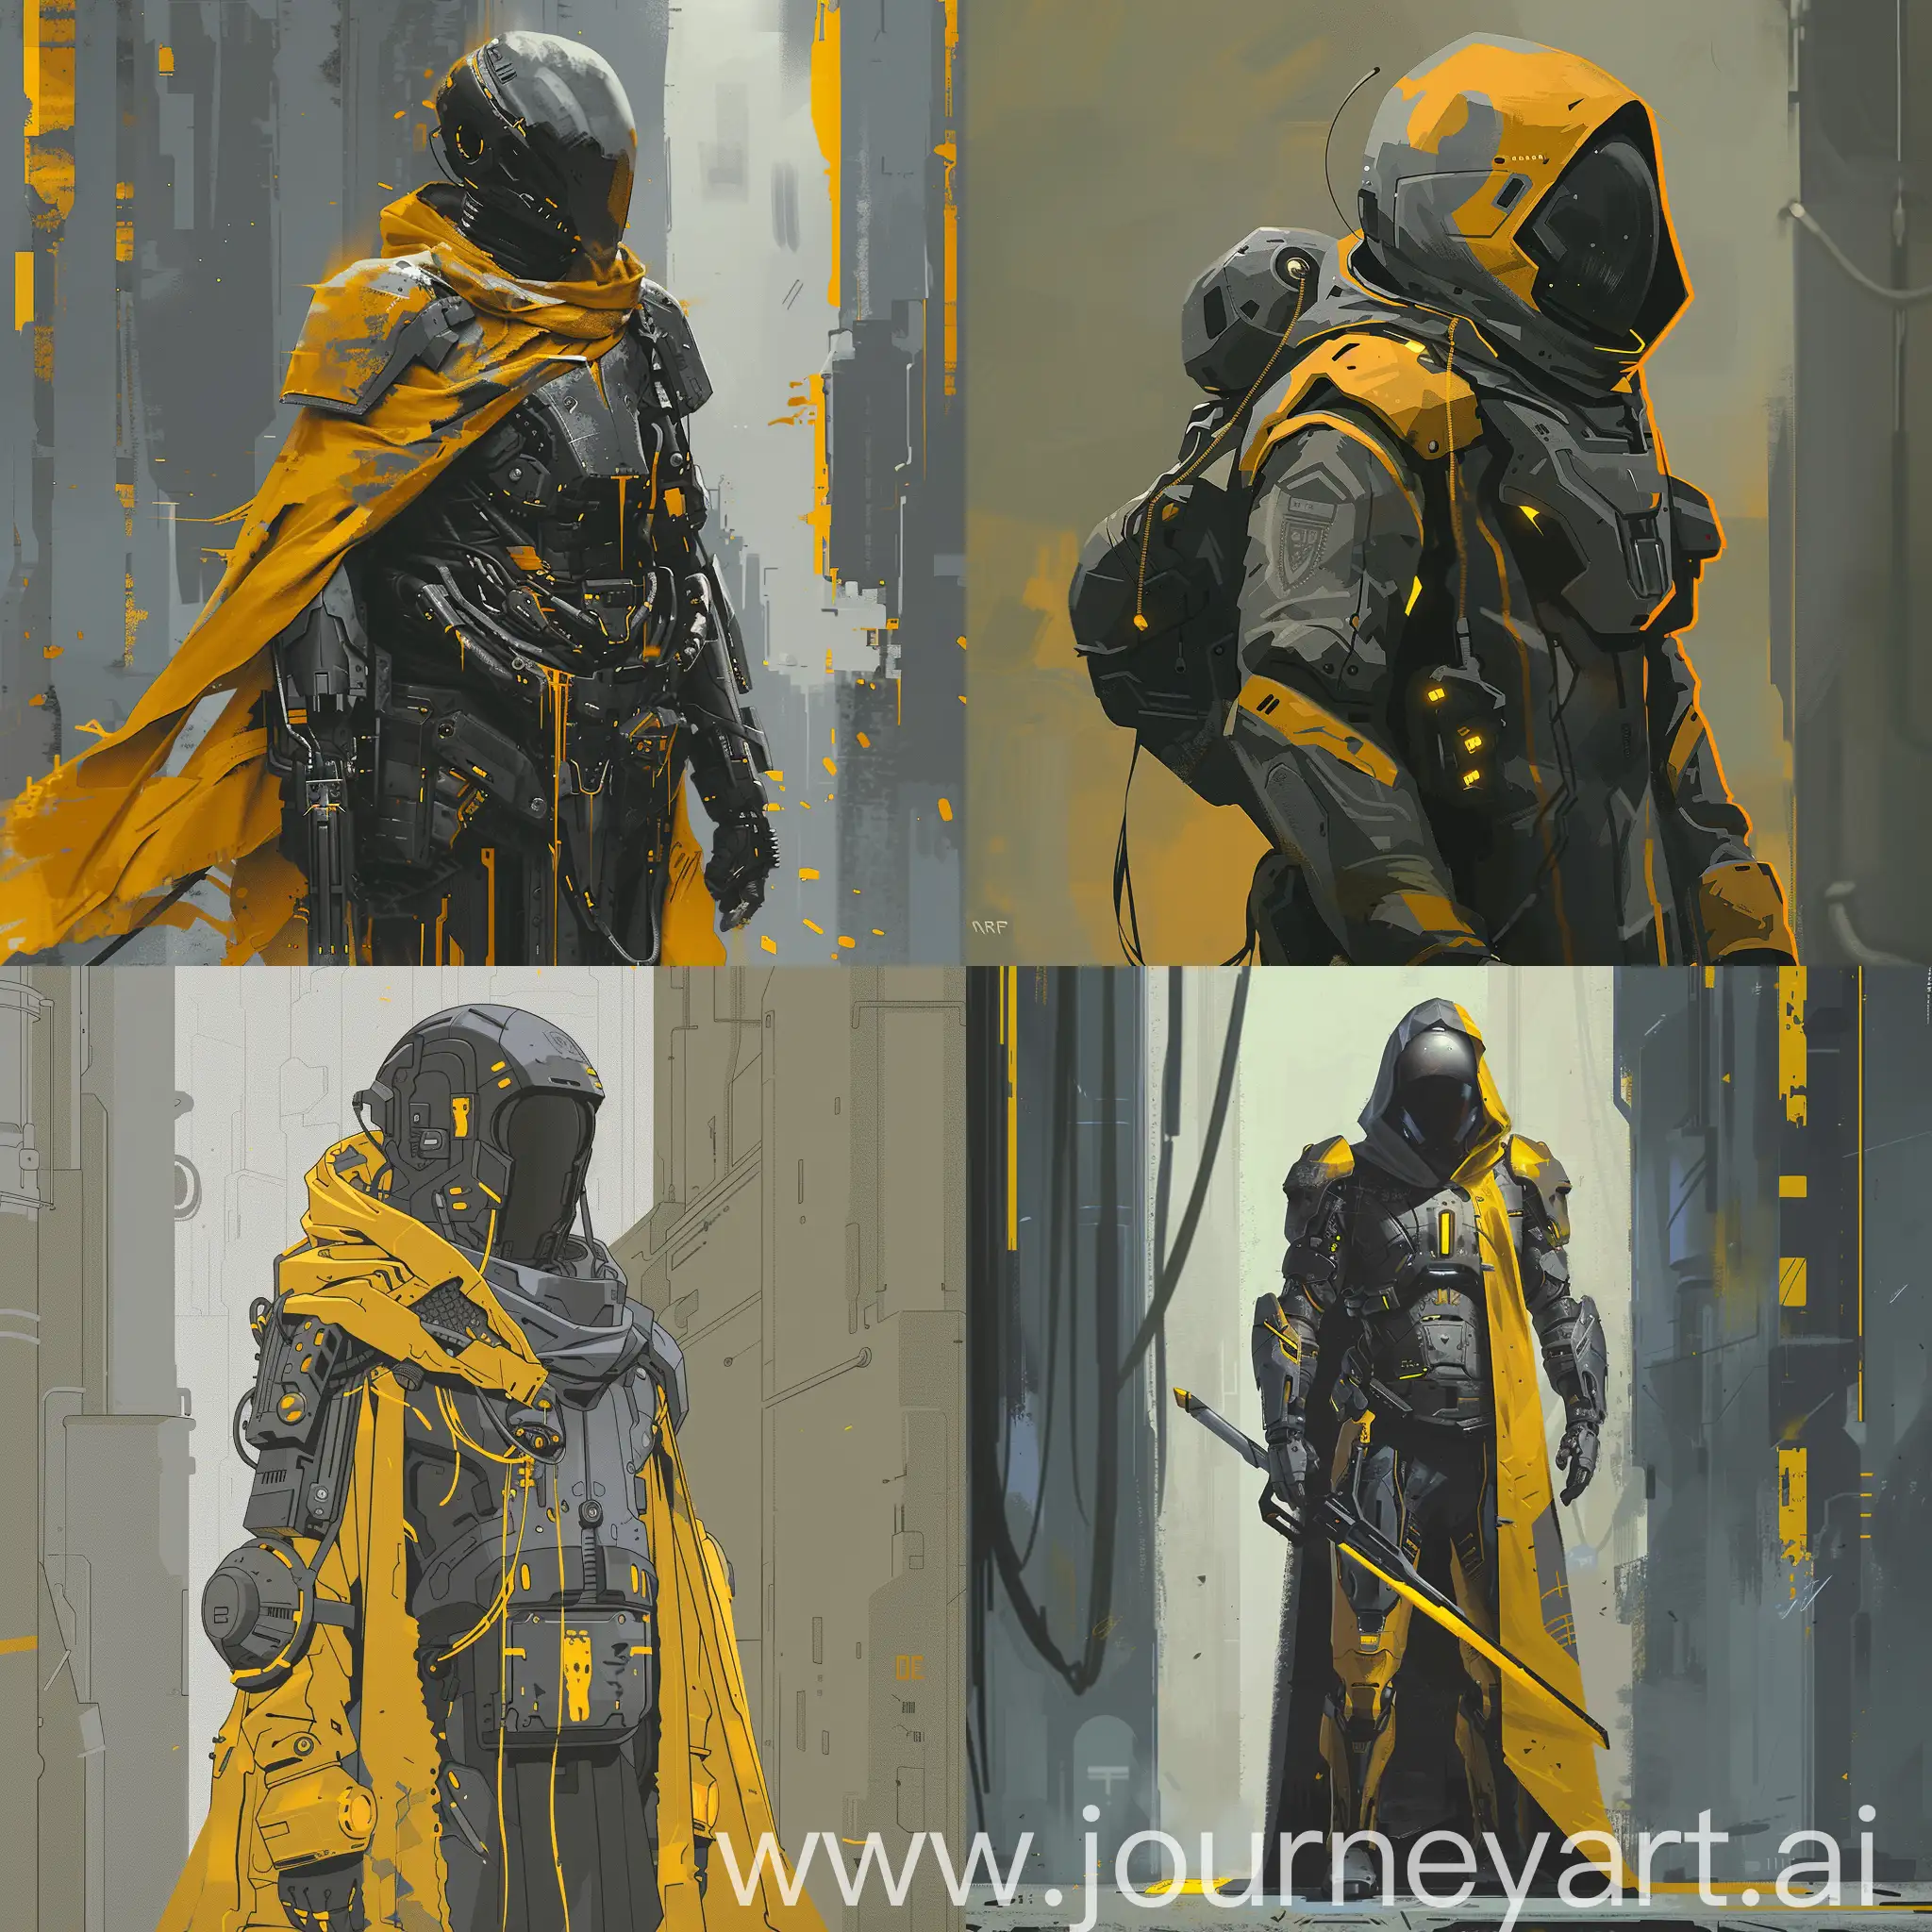 Futuristic-SciFi-Knight-in-Dark-Yellow-and-Gray-Tones